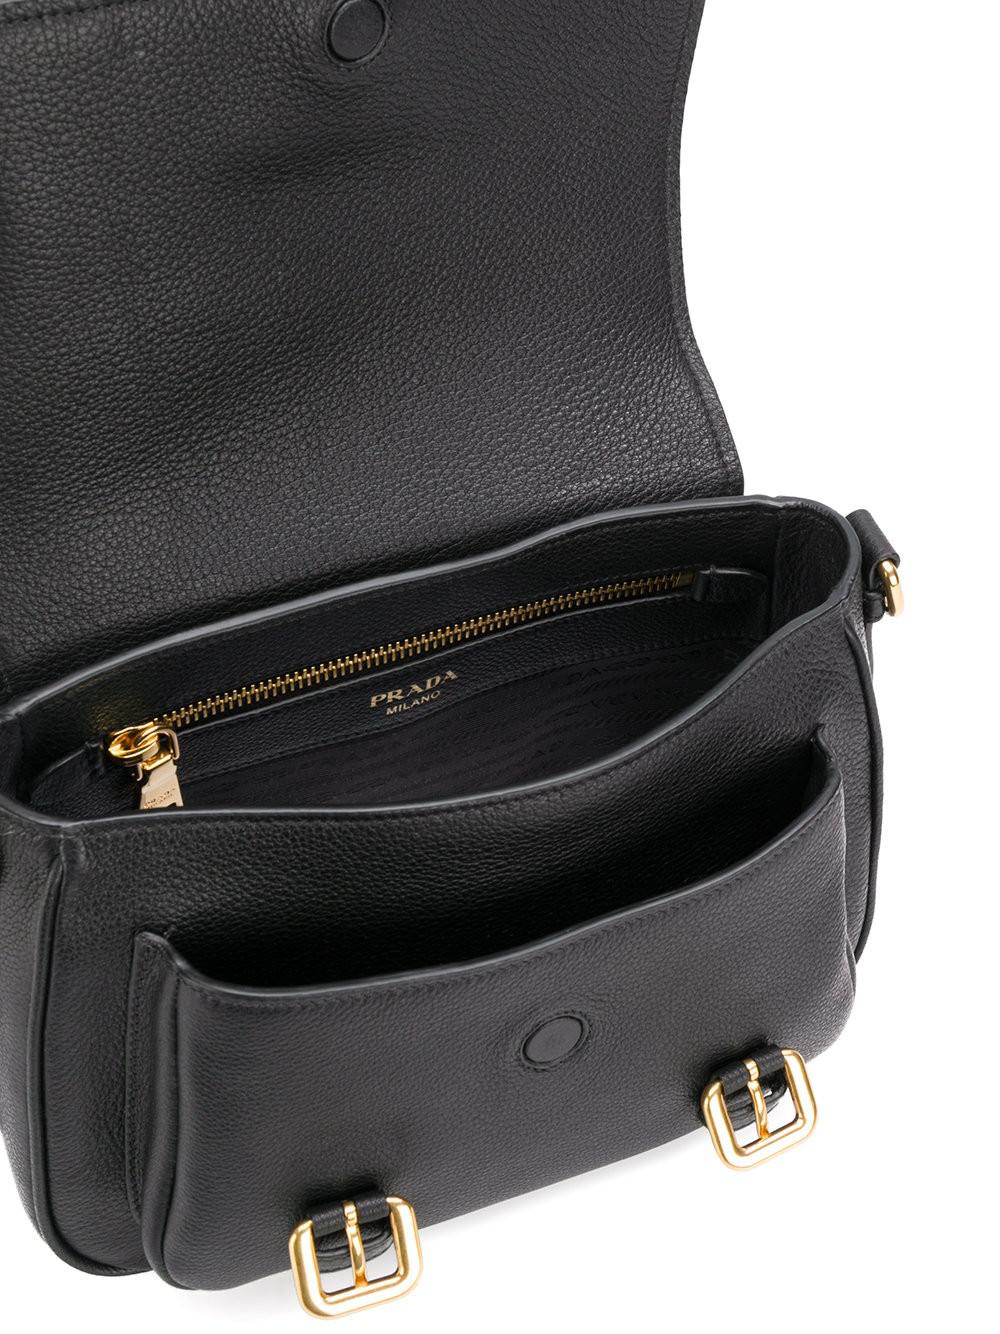 Lyst - Prada Buckle Flap Crossbody Bag in Black